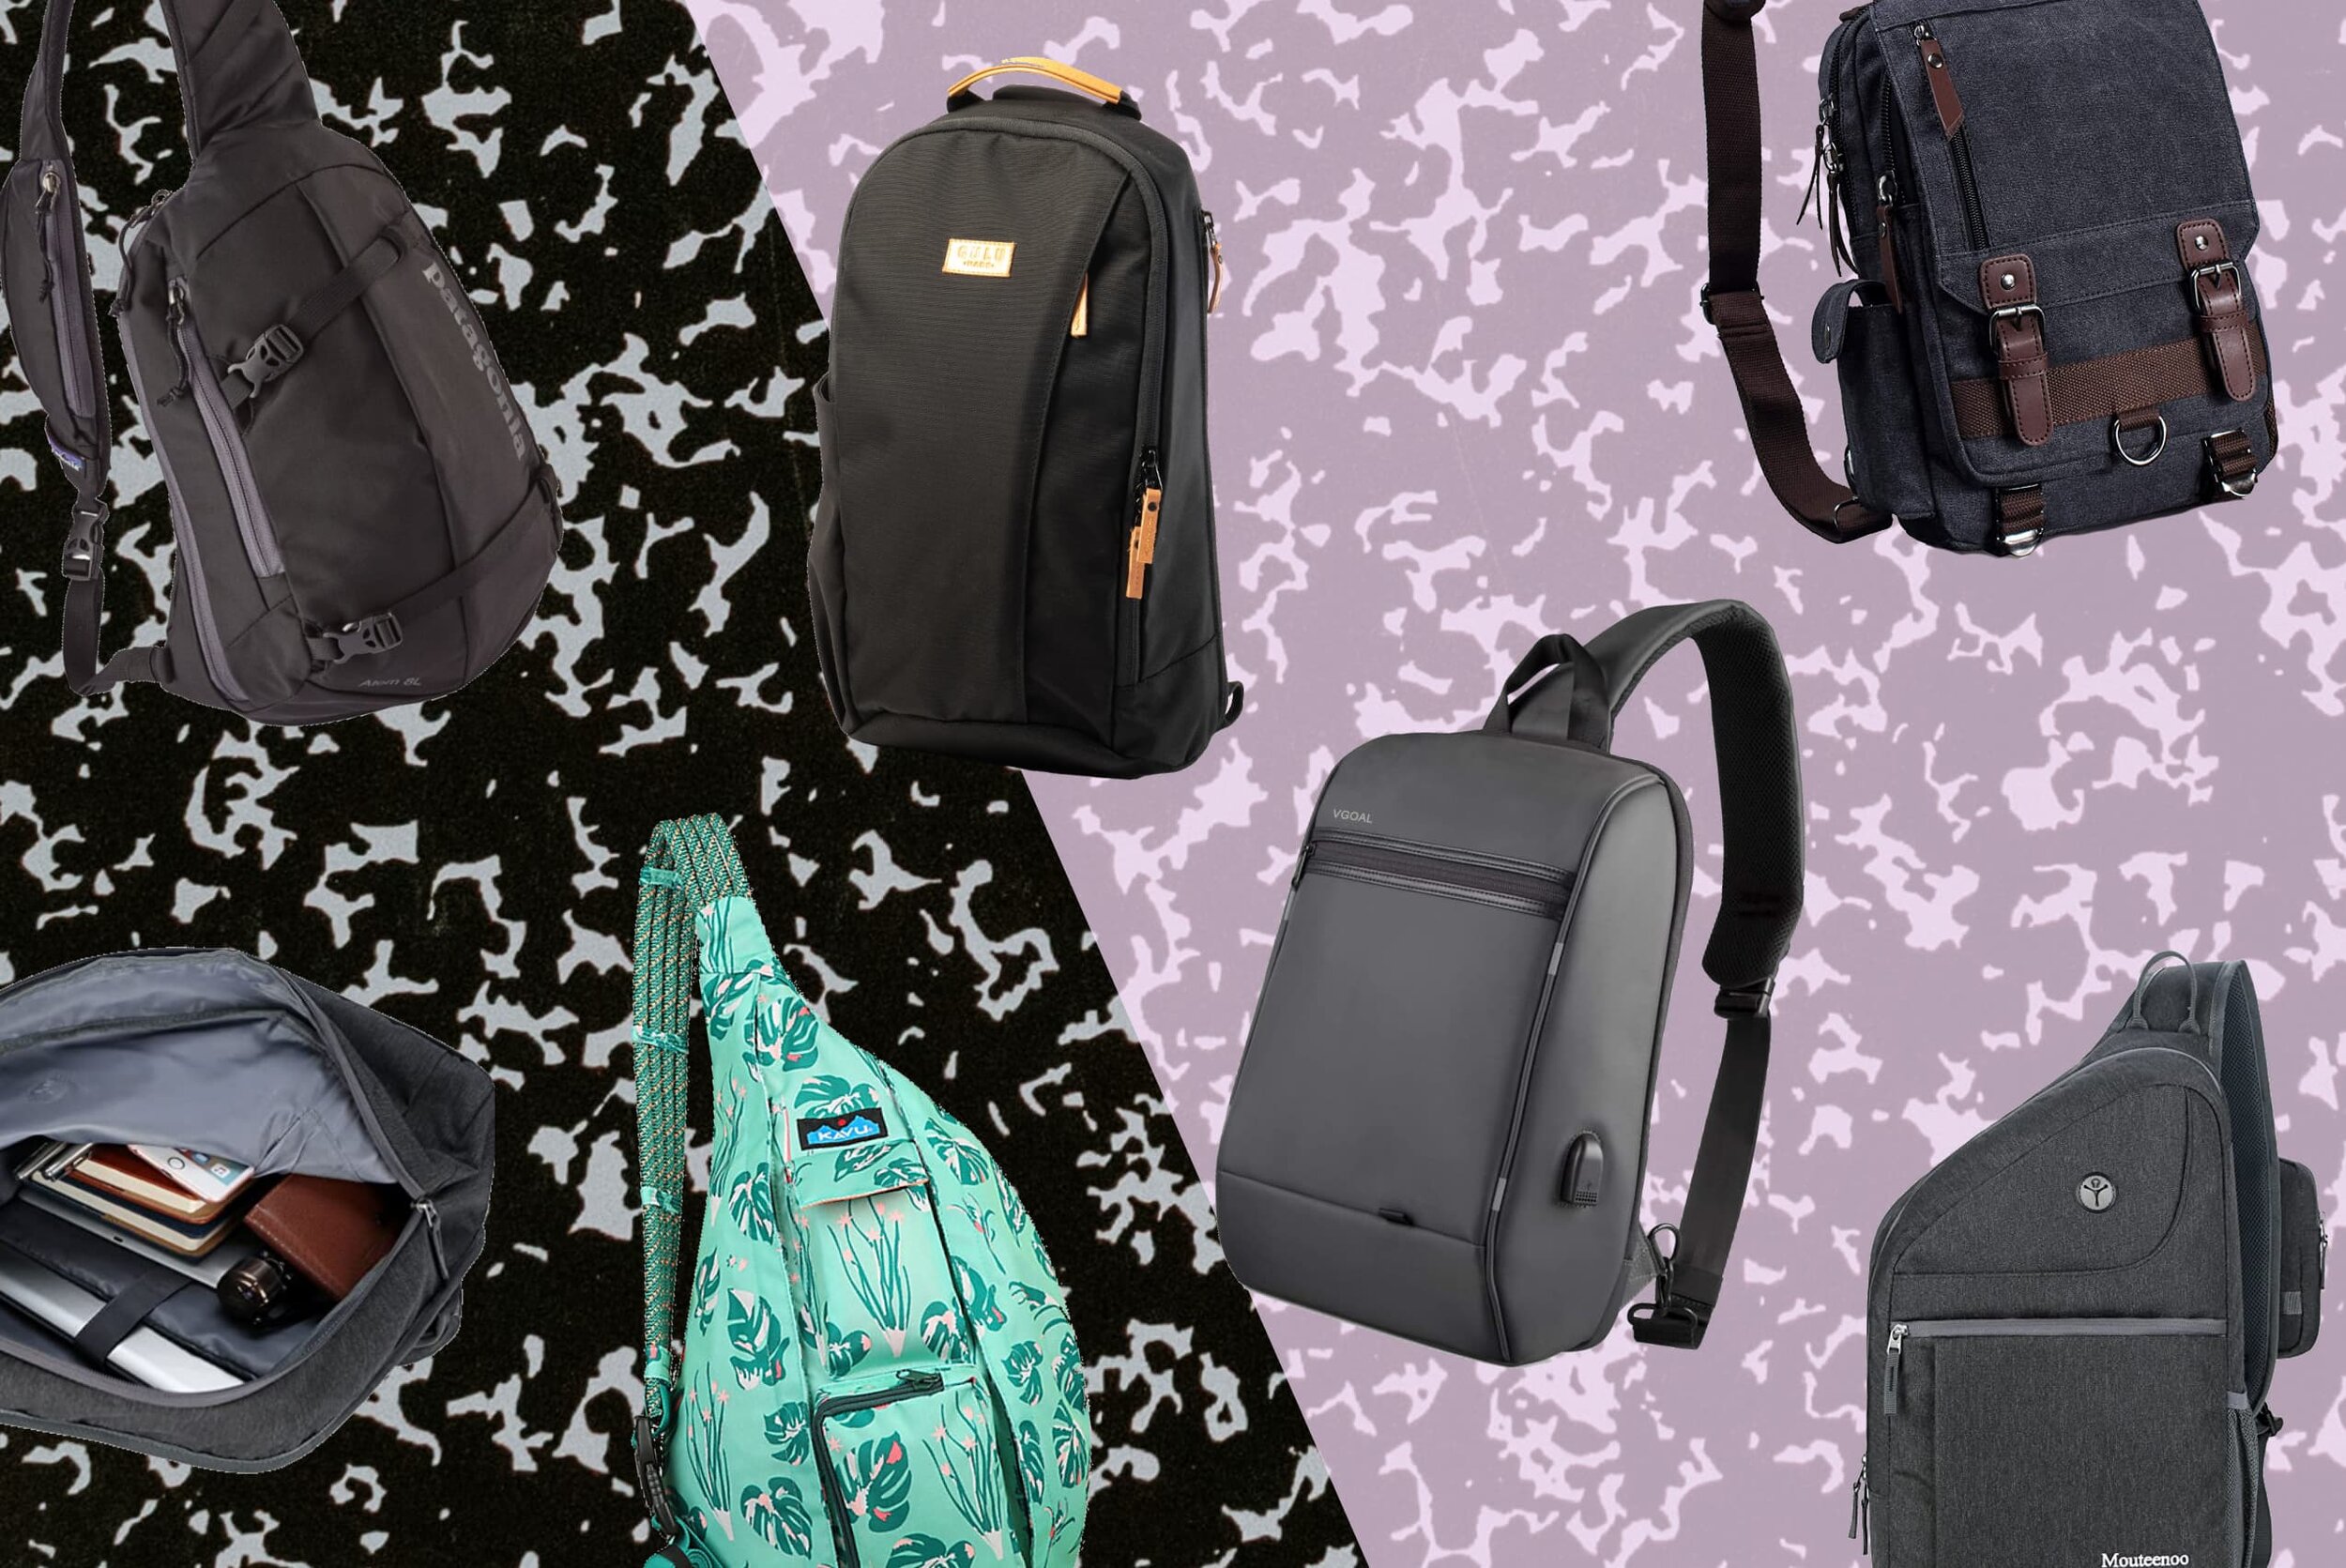 Retro Messenger Bag Canvas Shoulder Backpack One Straps Travel Rucksack Sling Bag Carrying Cases